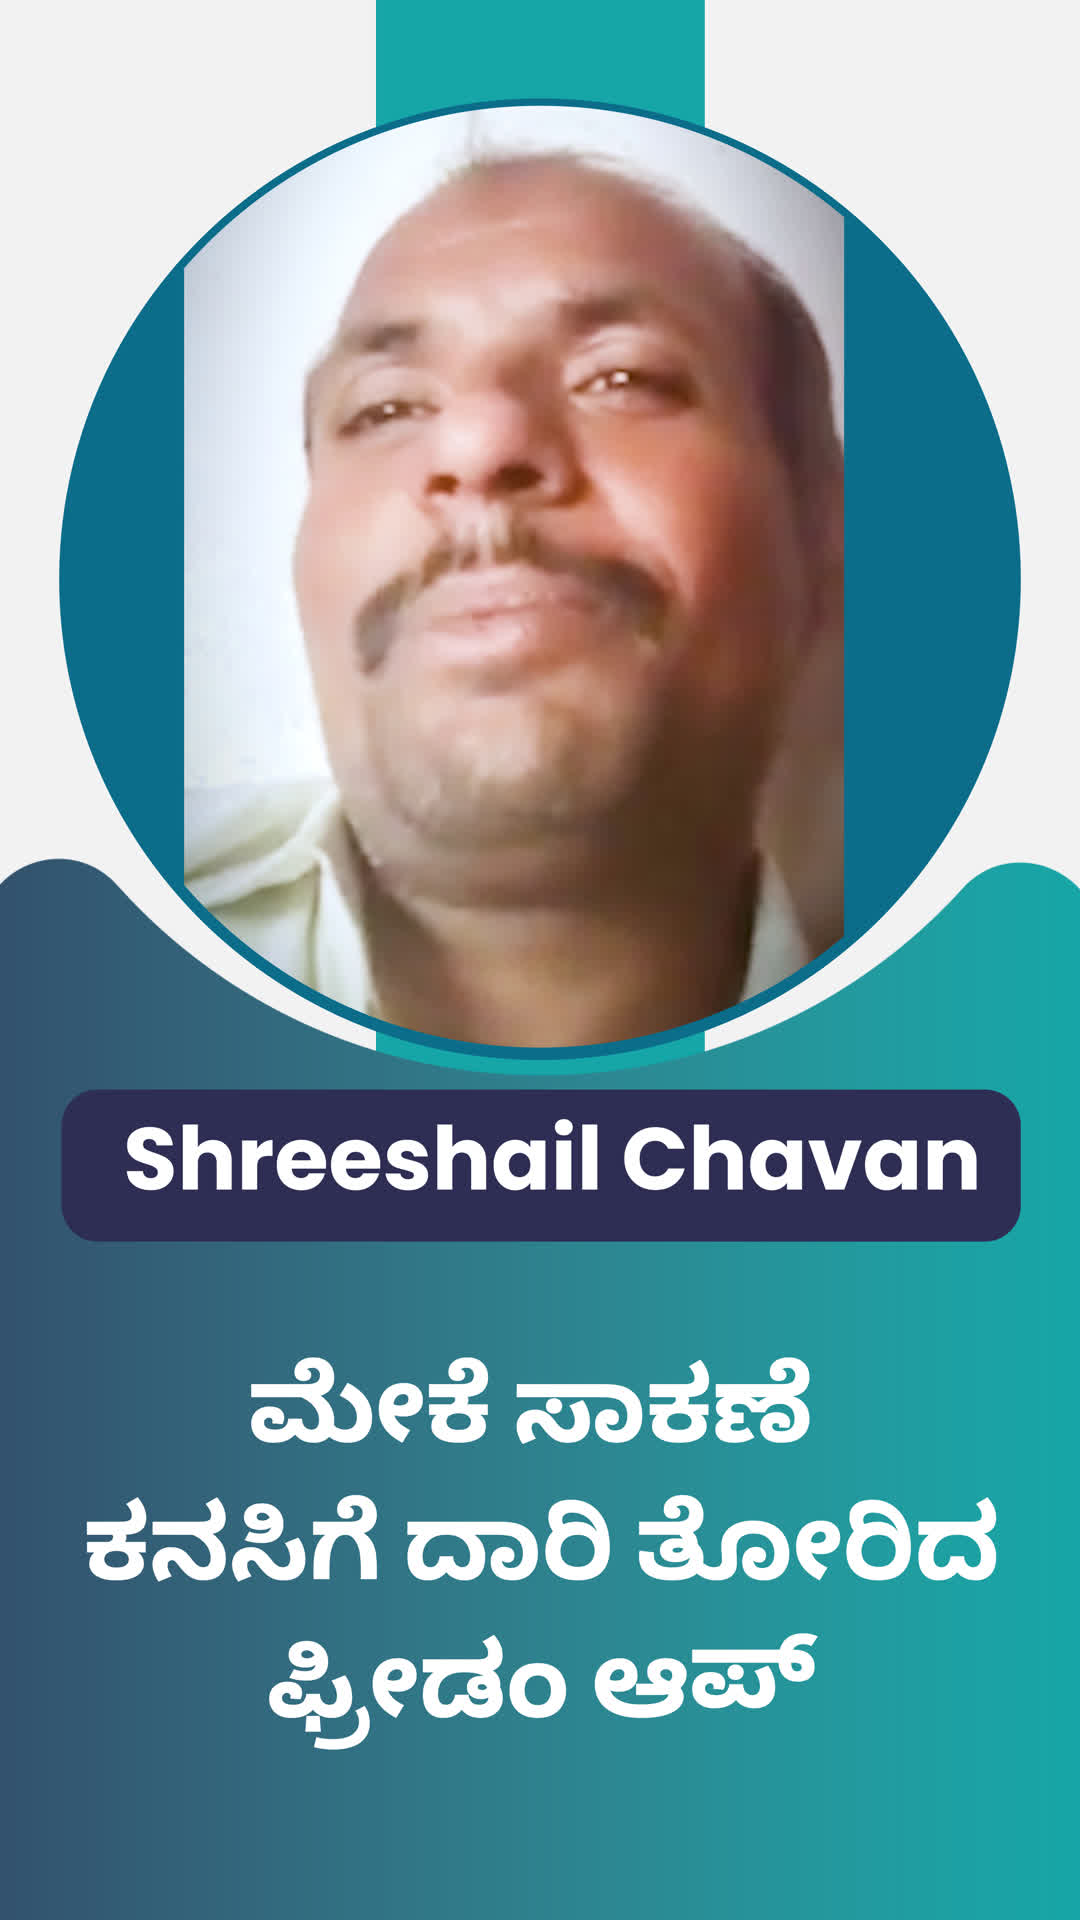 Shreeshail Chavan's Honest Review of ffreedom app - Vijayapura ,Karnataka